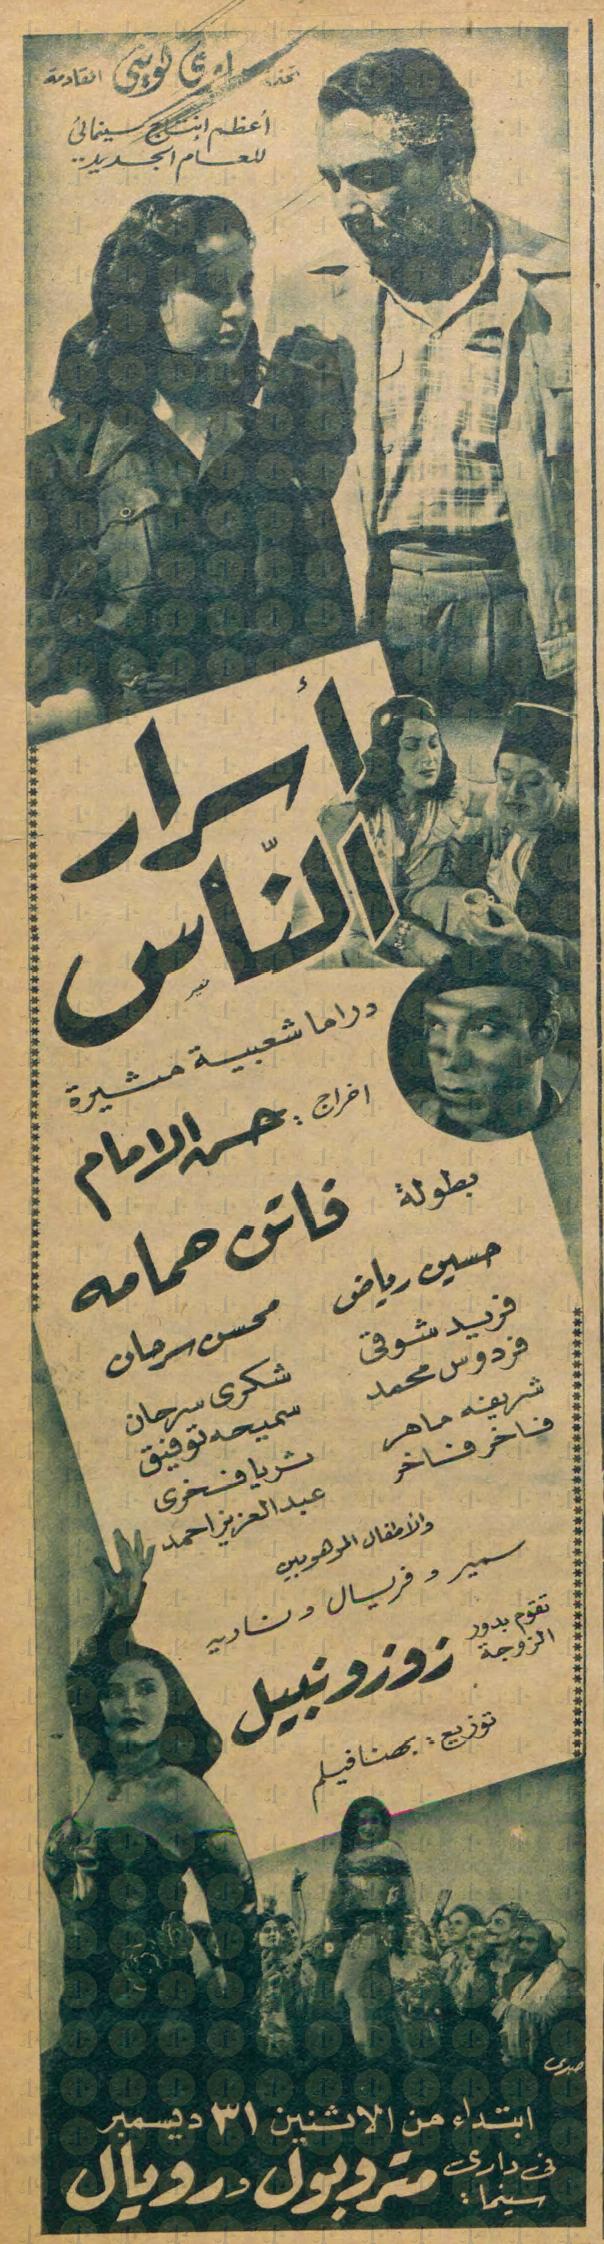 إعلان العرض الأول لفيلم أسرار الناس، يوم: 31 ديسمبر 1951م.